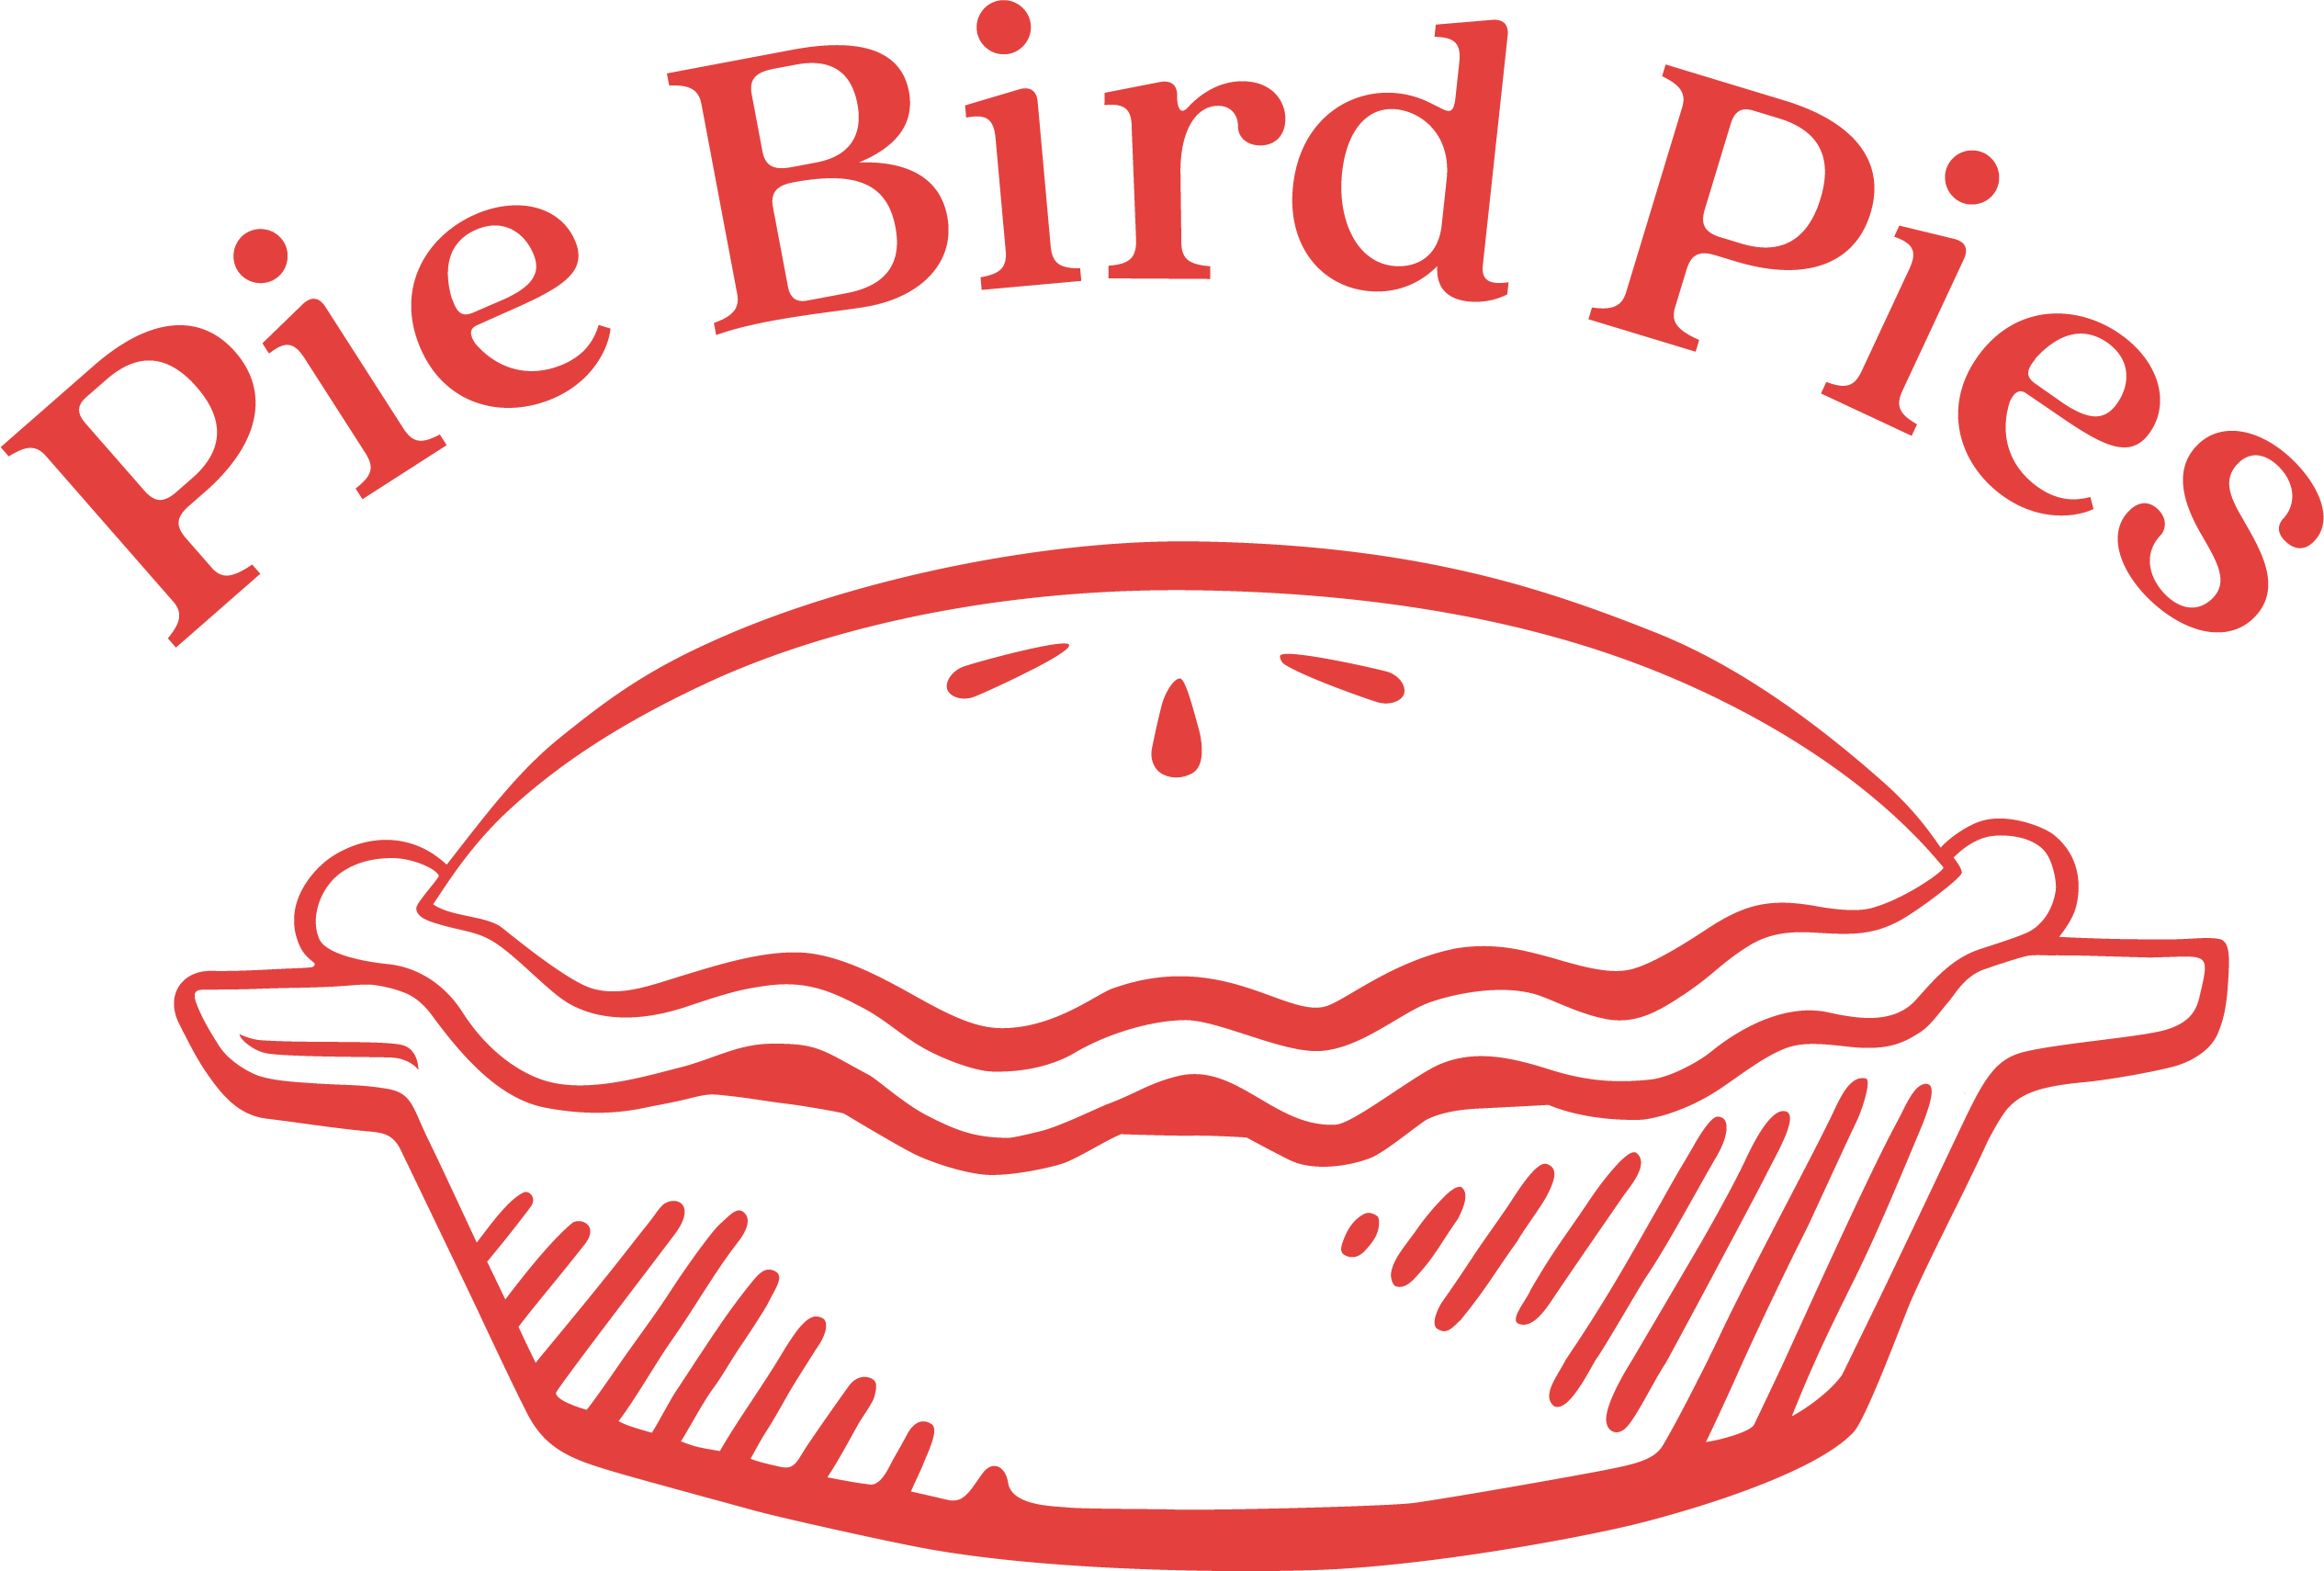 pie-bird-pies